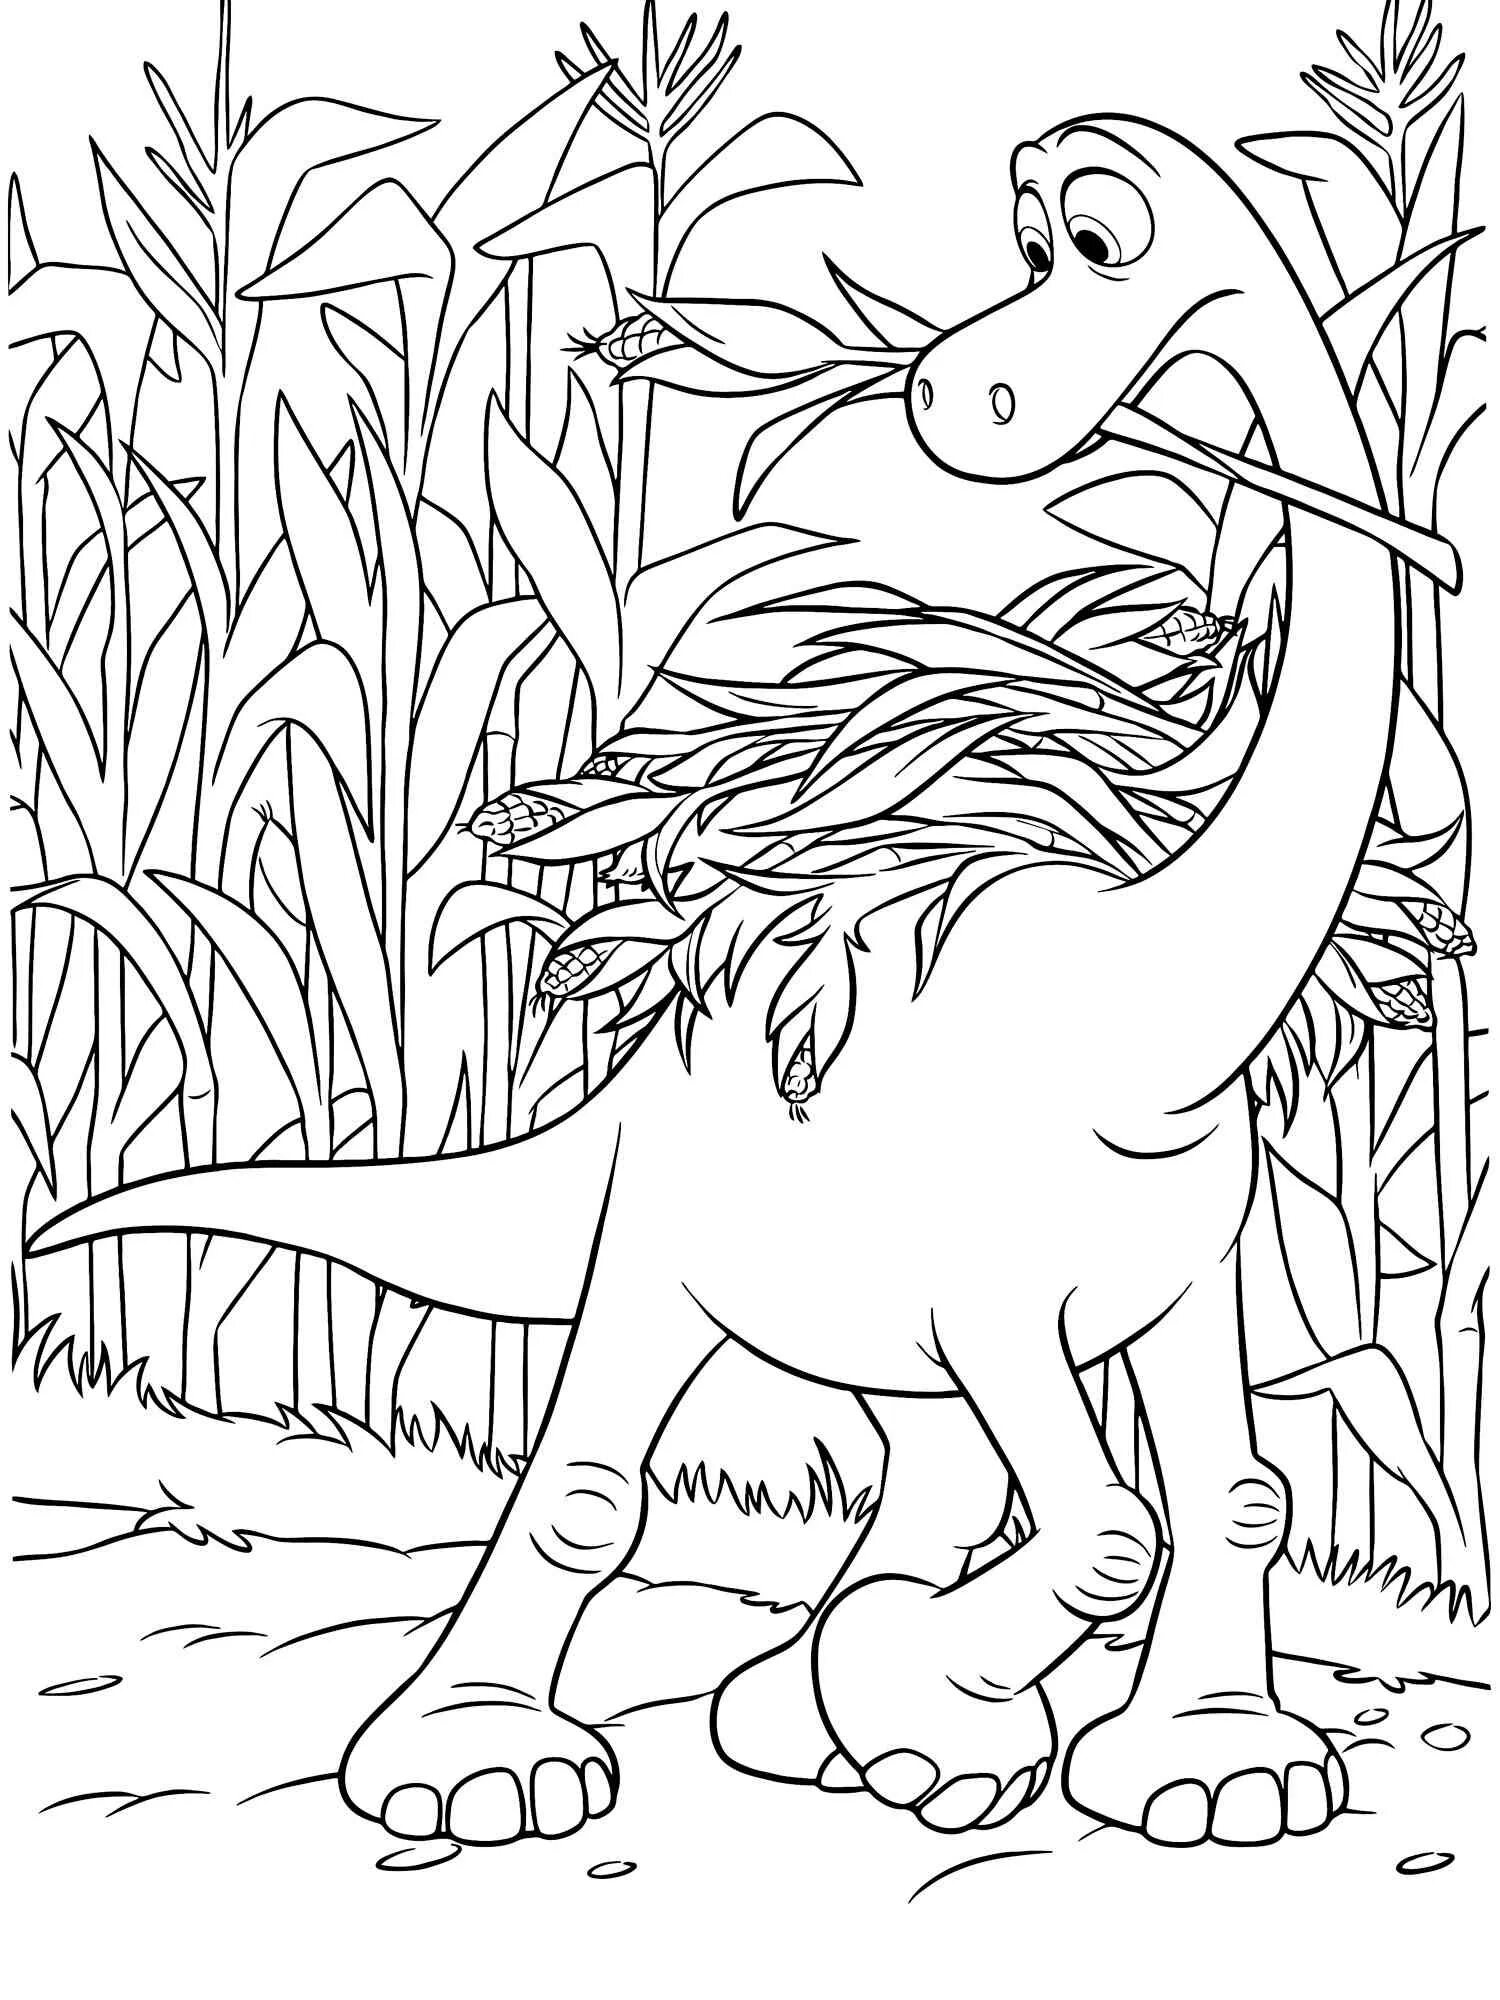 Раскраска динозавр формат а4. Хороший динозавр Арло. Раскраска Арло хороший динозавр. Динозавры / раскраска. Динозавр раскраска для детей.